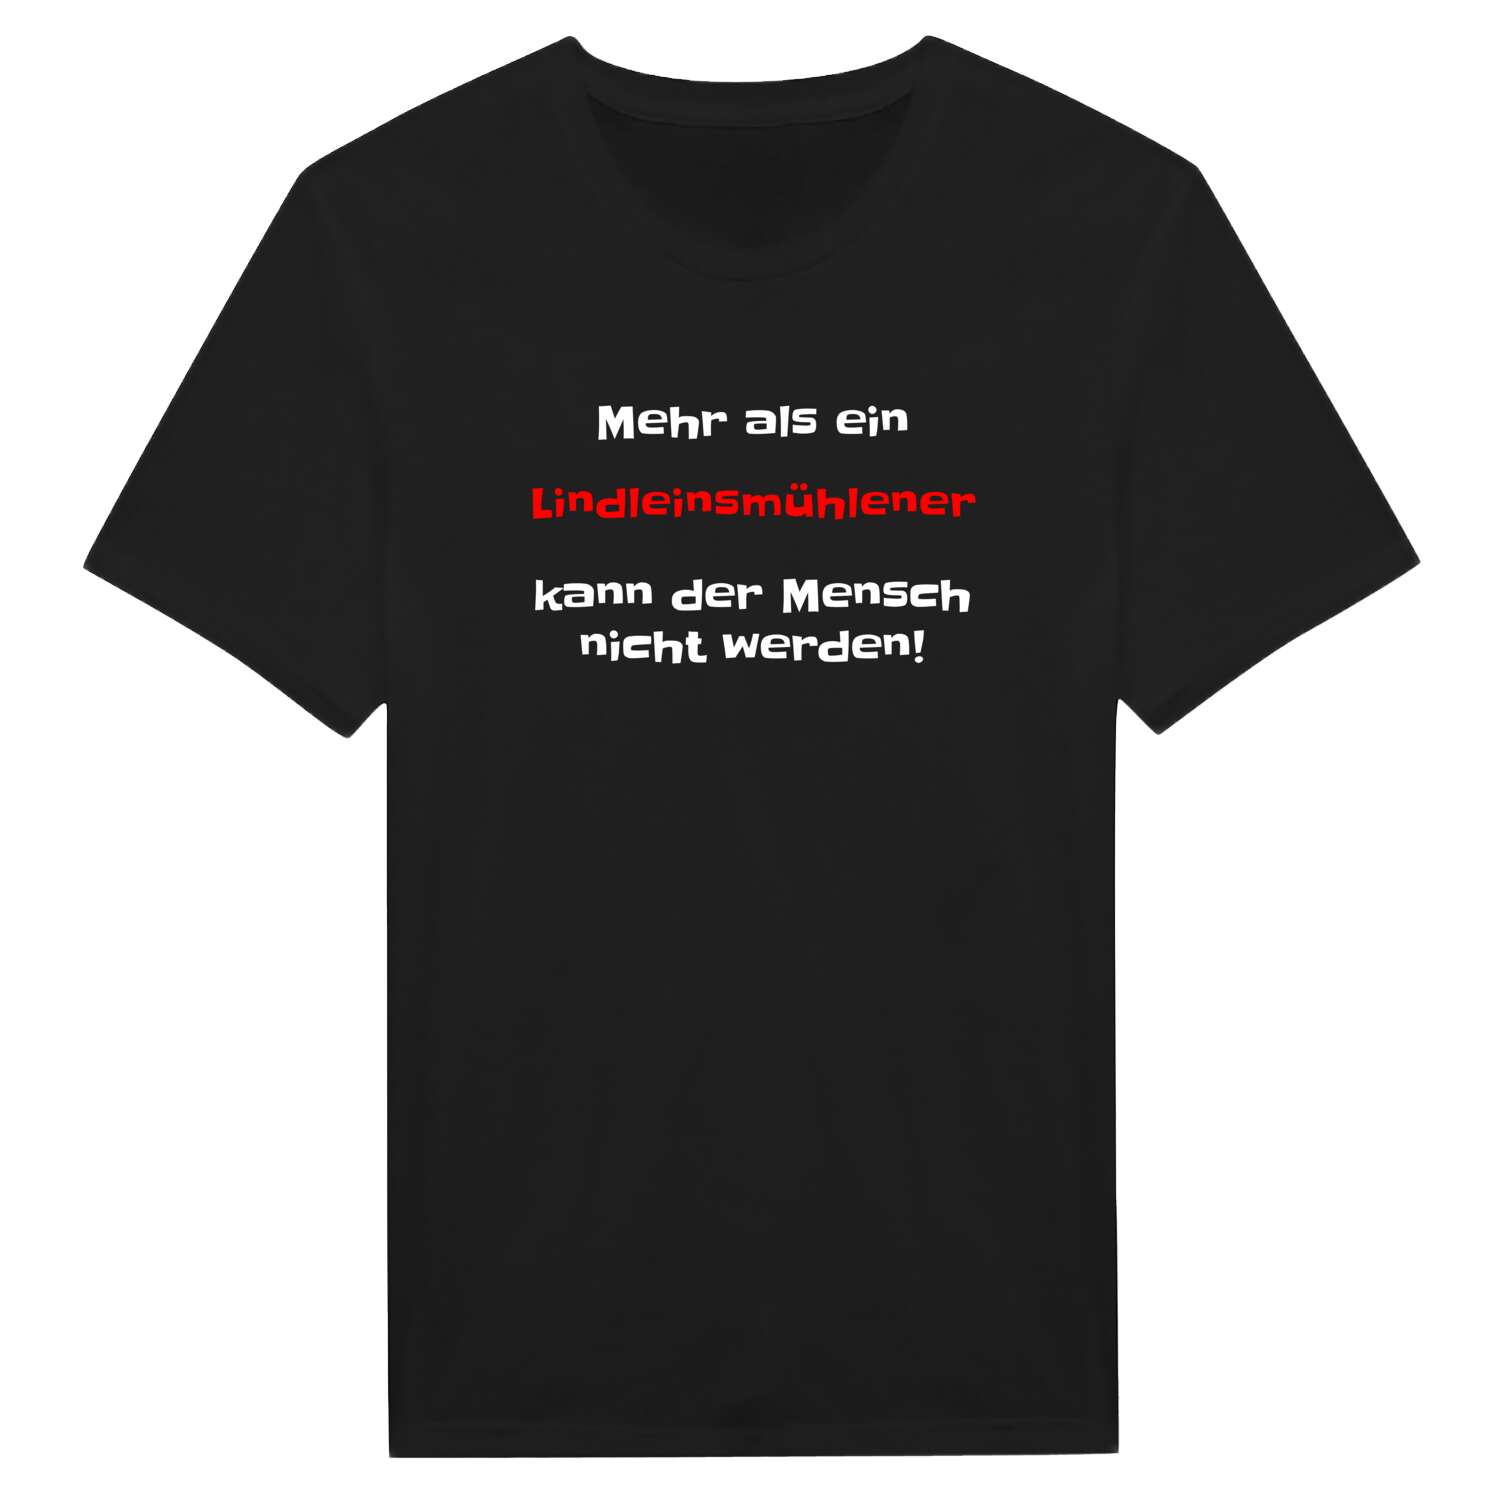 Lindleinsmühle T-Shirt »Mehr als ein«